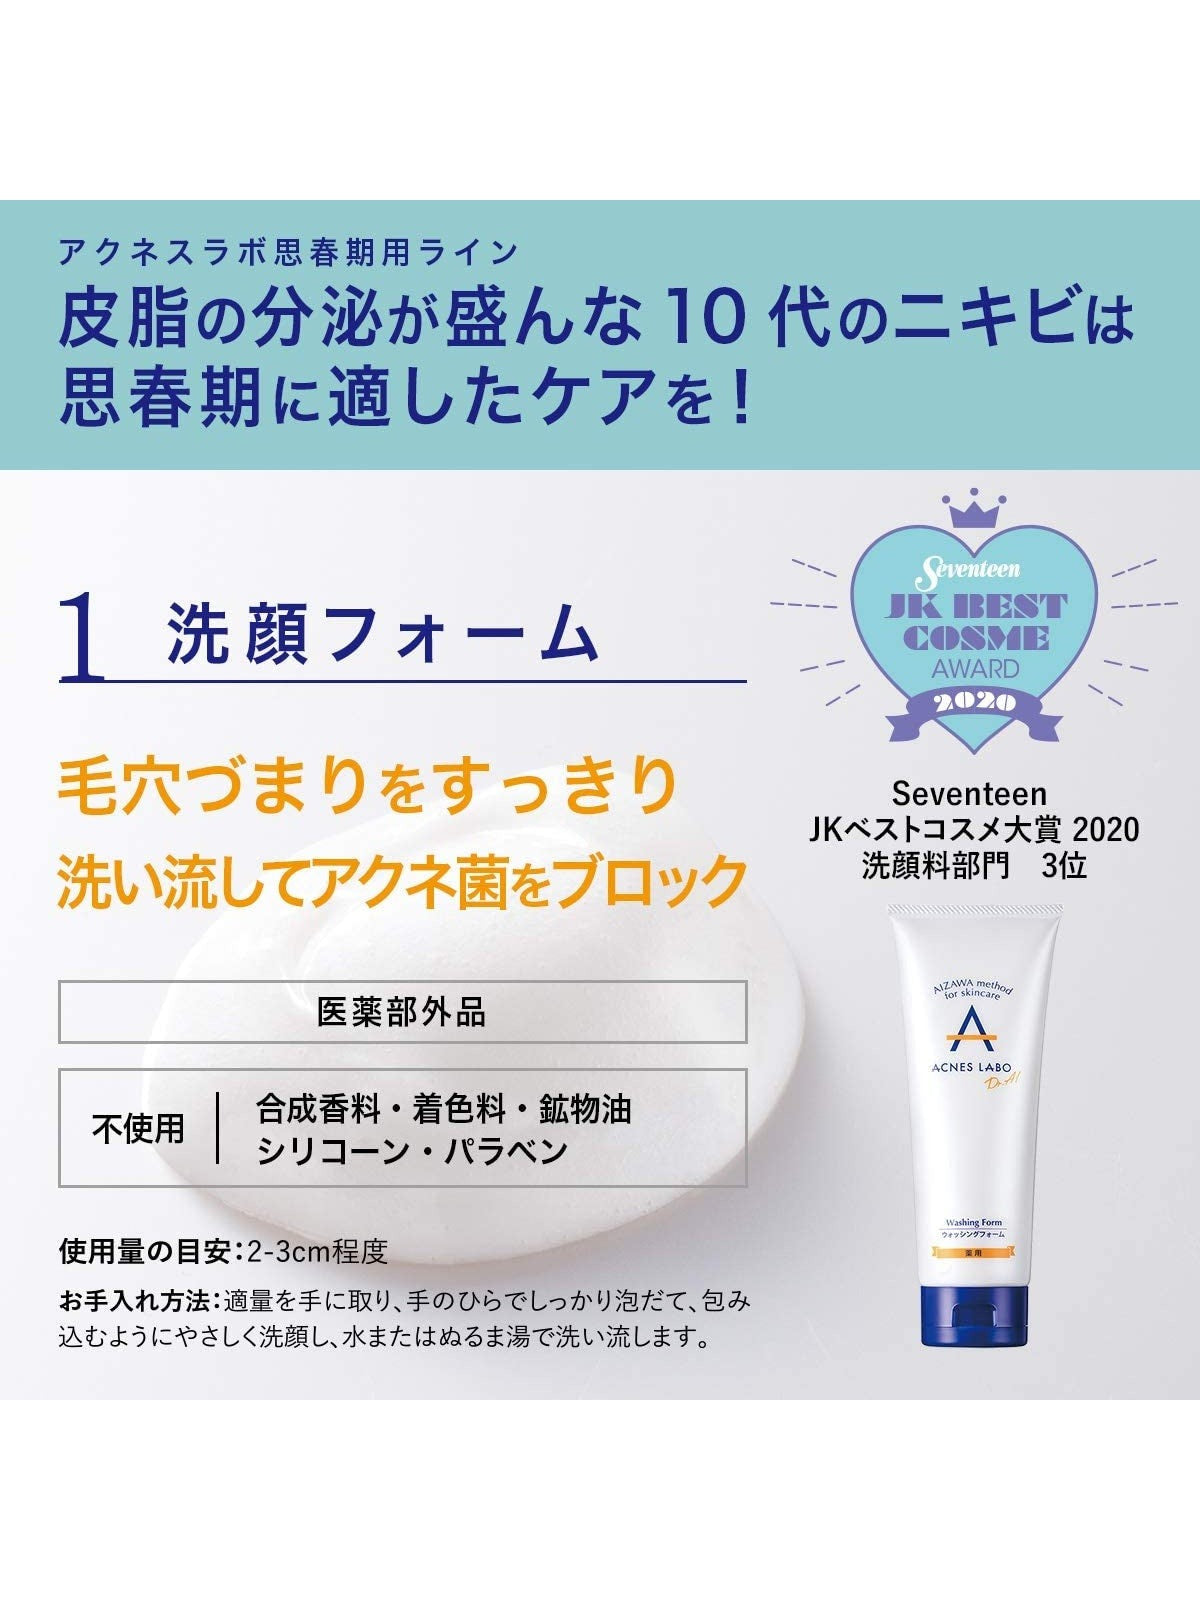 【医薬部外品】CICAクリーム+スポッツクリーム+洗顔セット アクネスラボ